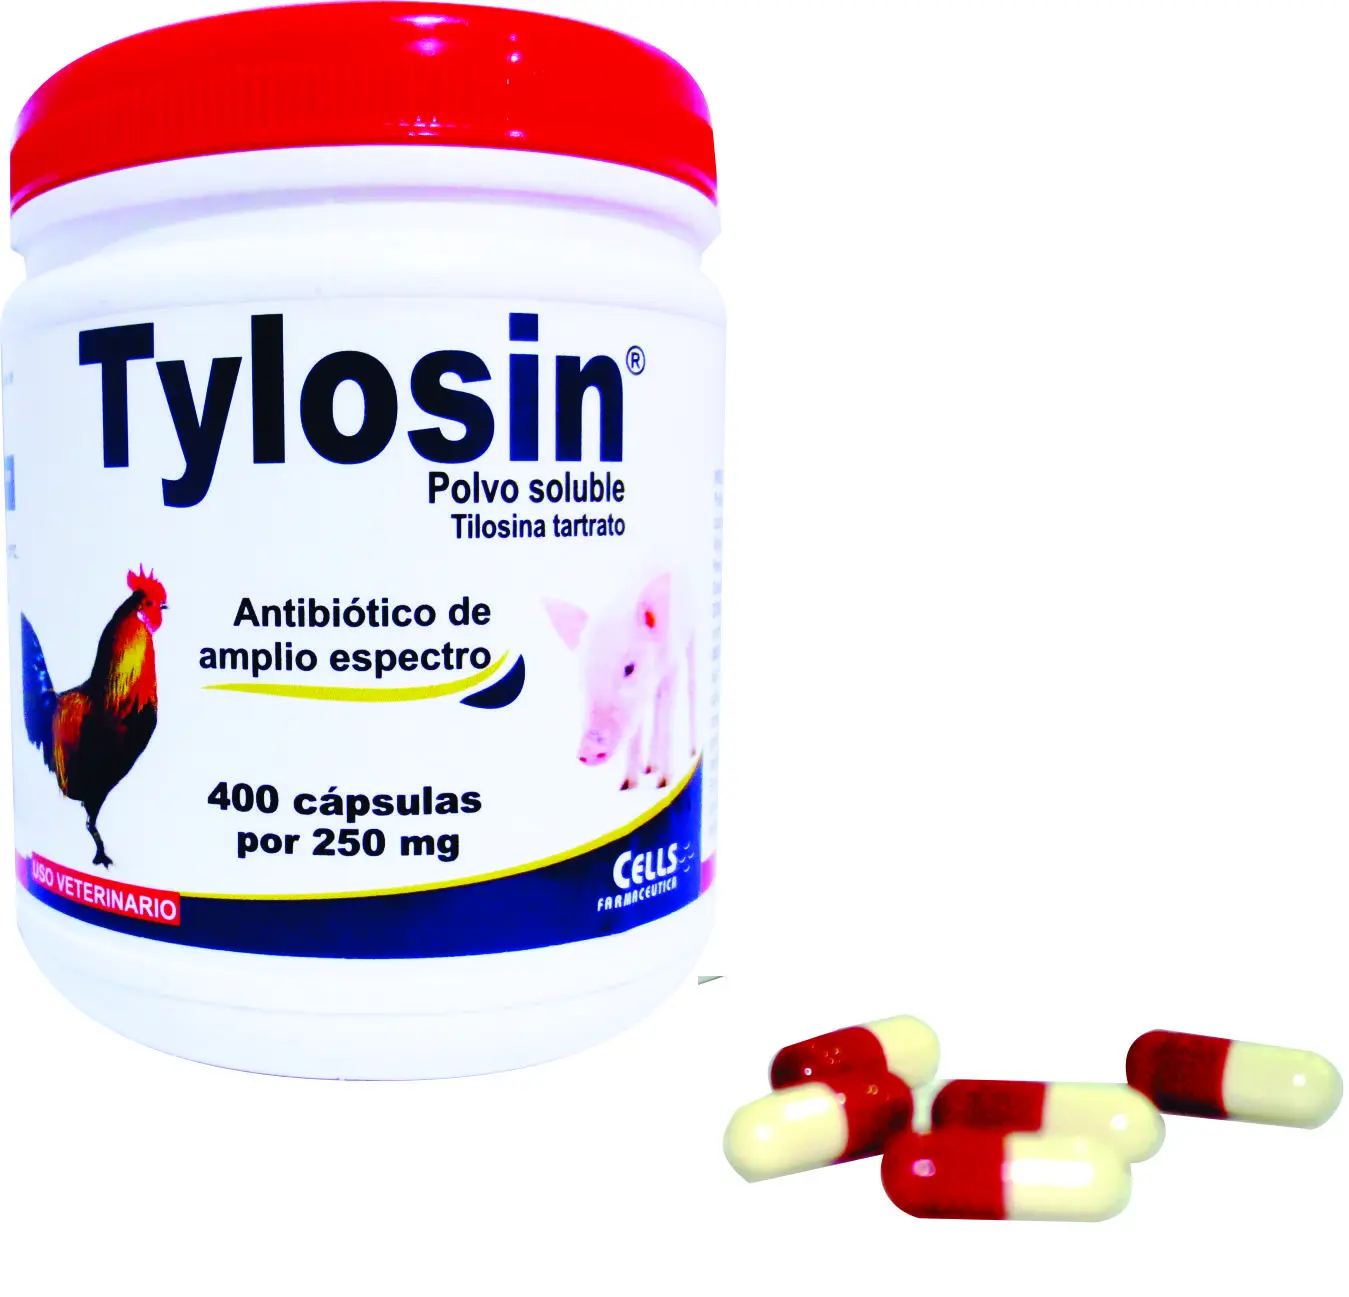 tilosina tartrato en aves - Cuál es el mejor antibiótico para aves